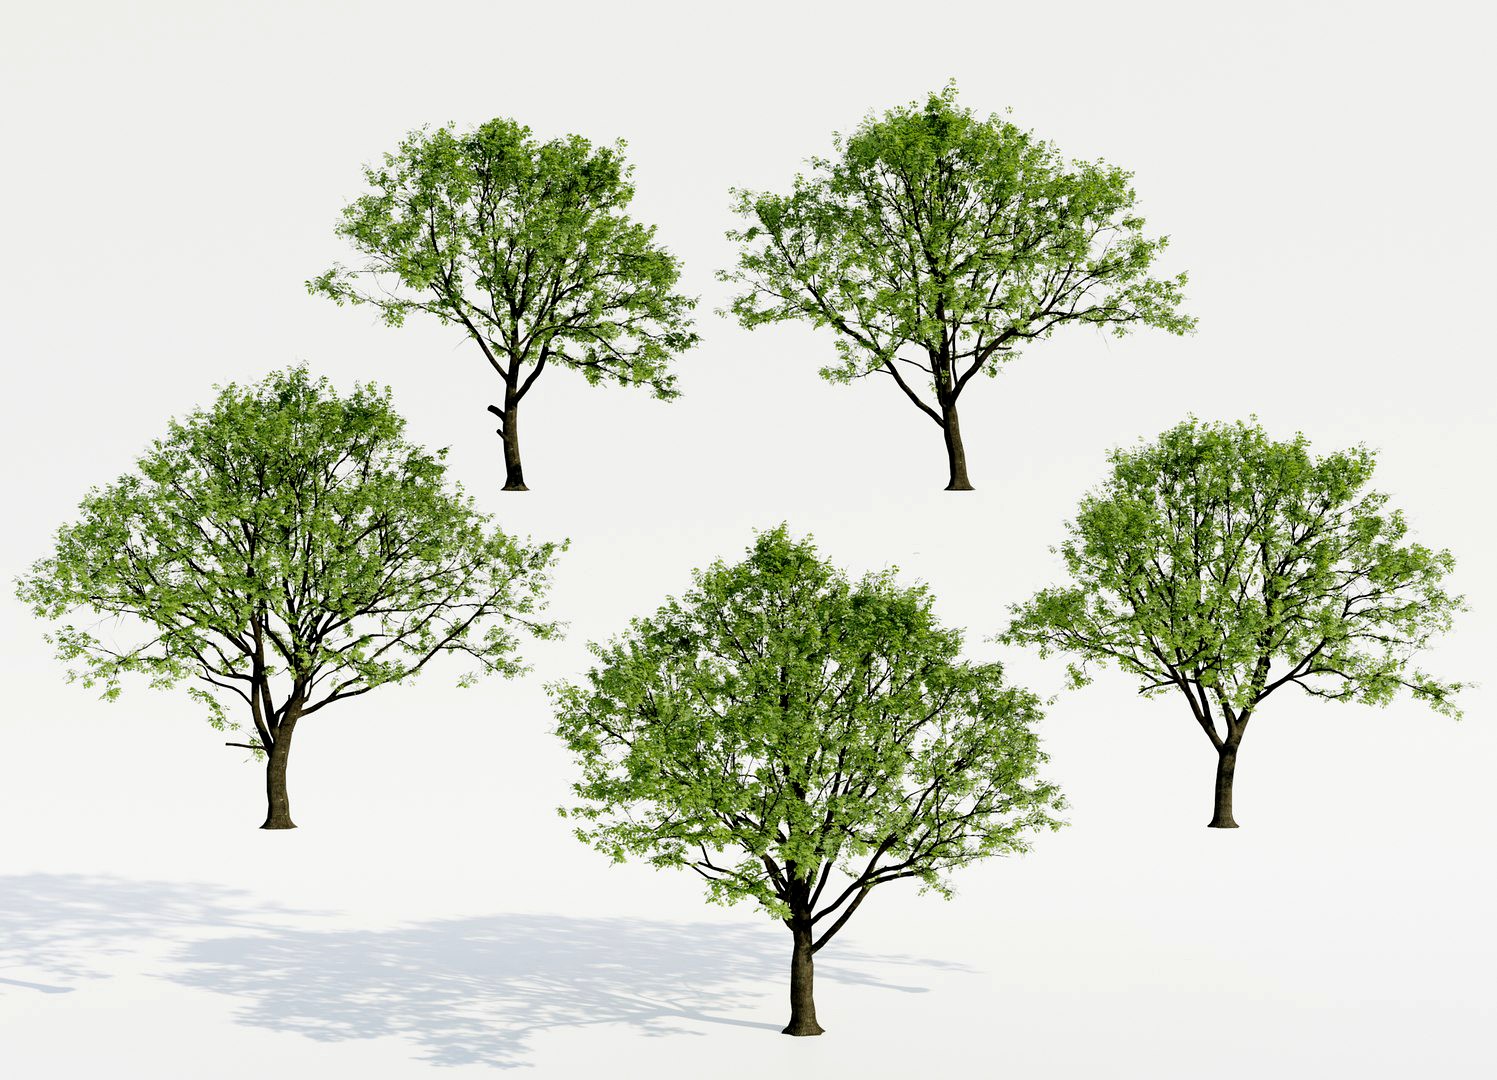 Common Trees